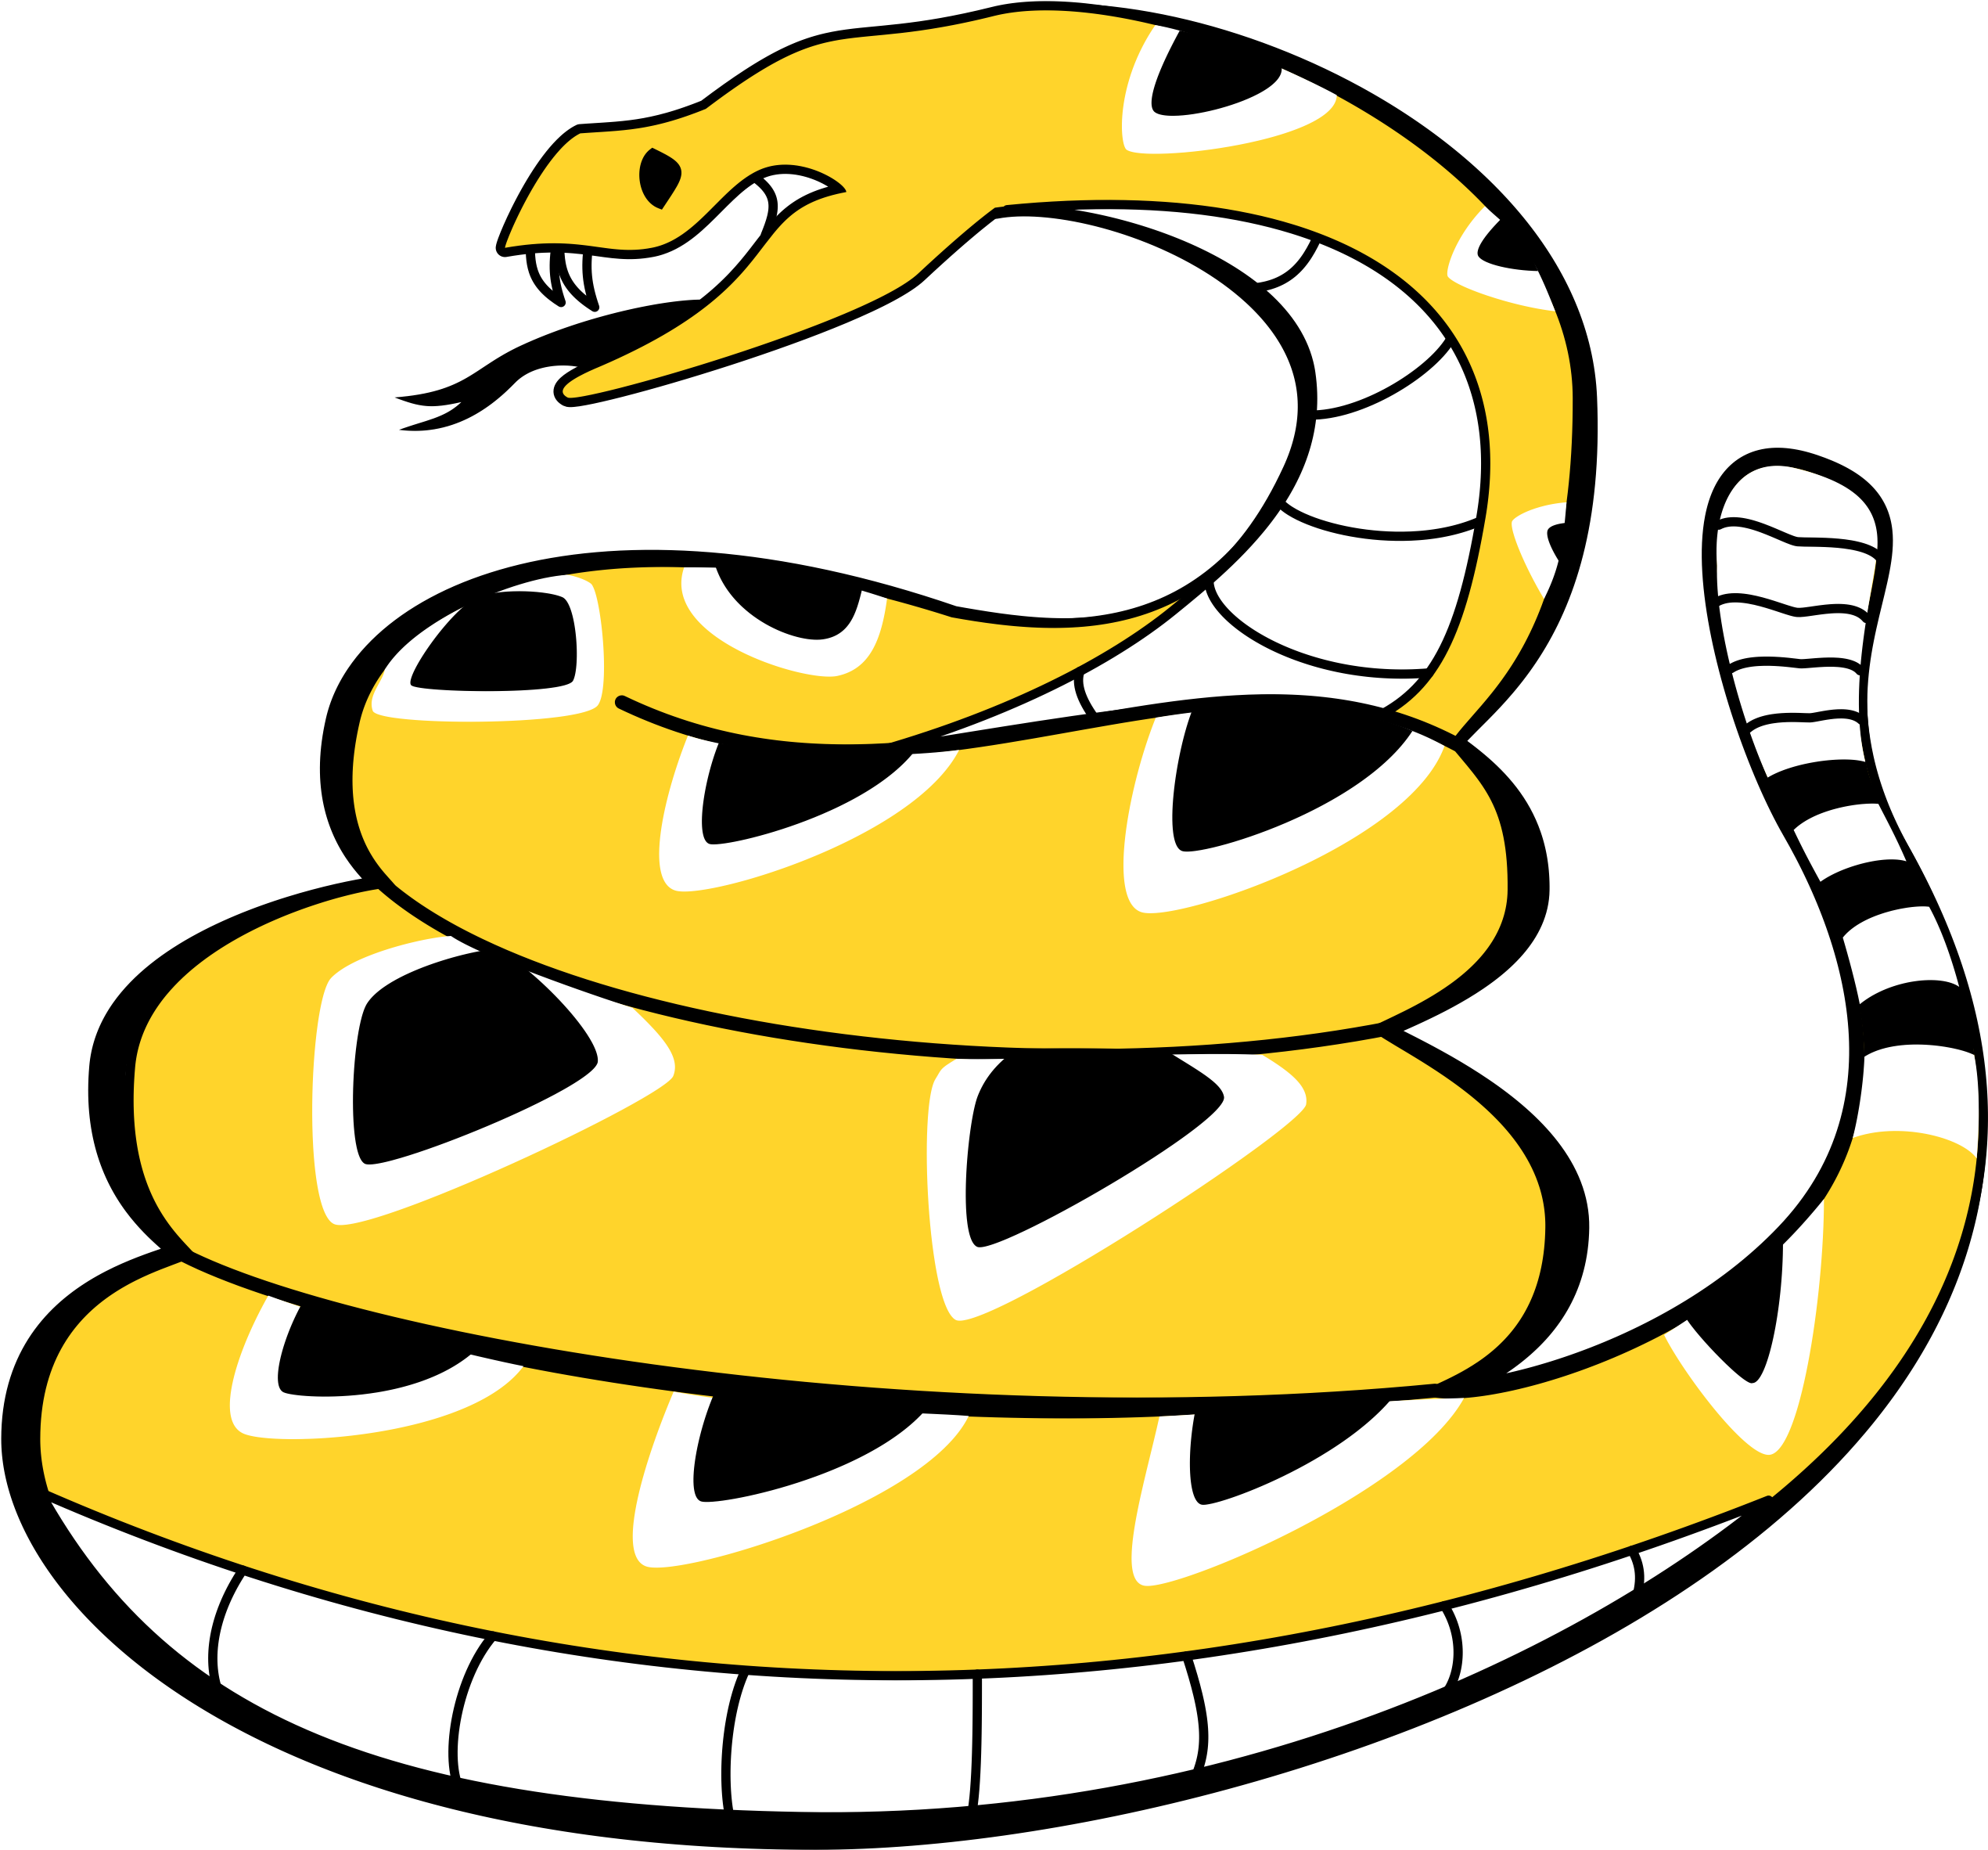 Rattlesnake - Rattlesnake (2557x2390)